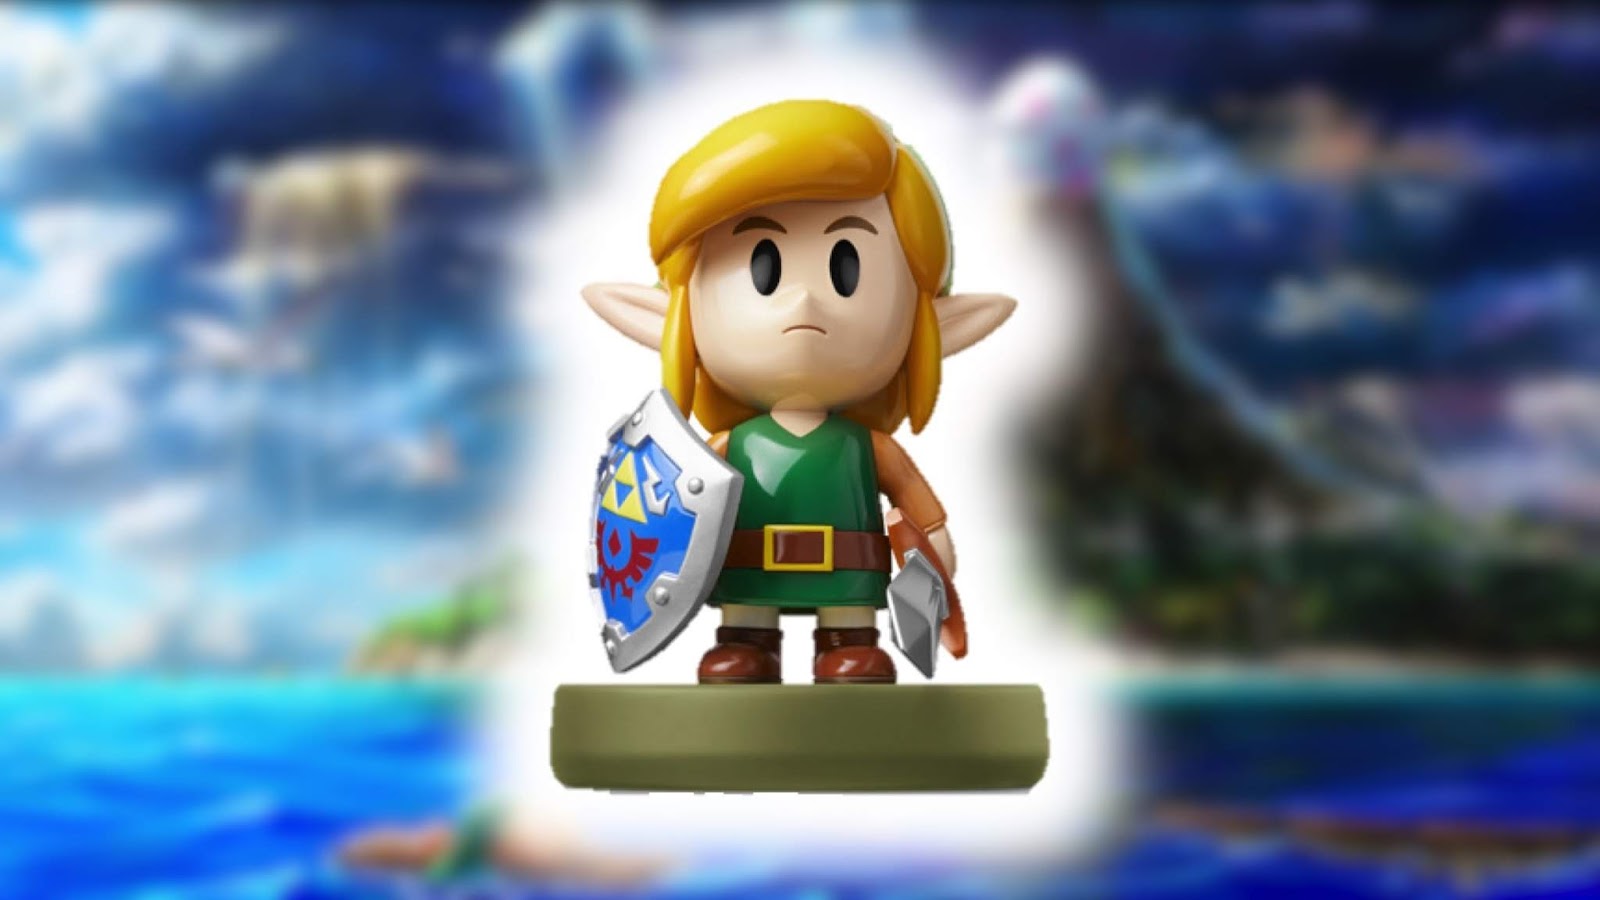 Nintendo Amiibo - Link: The Legend of Zelda: Link's Awakening Series -  Switch